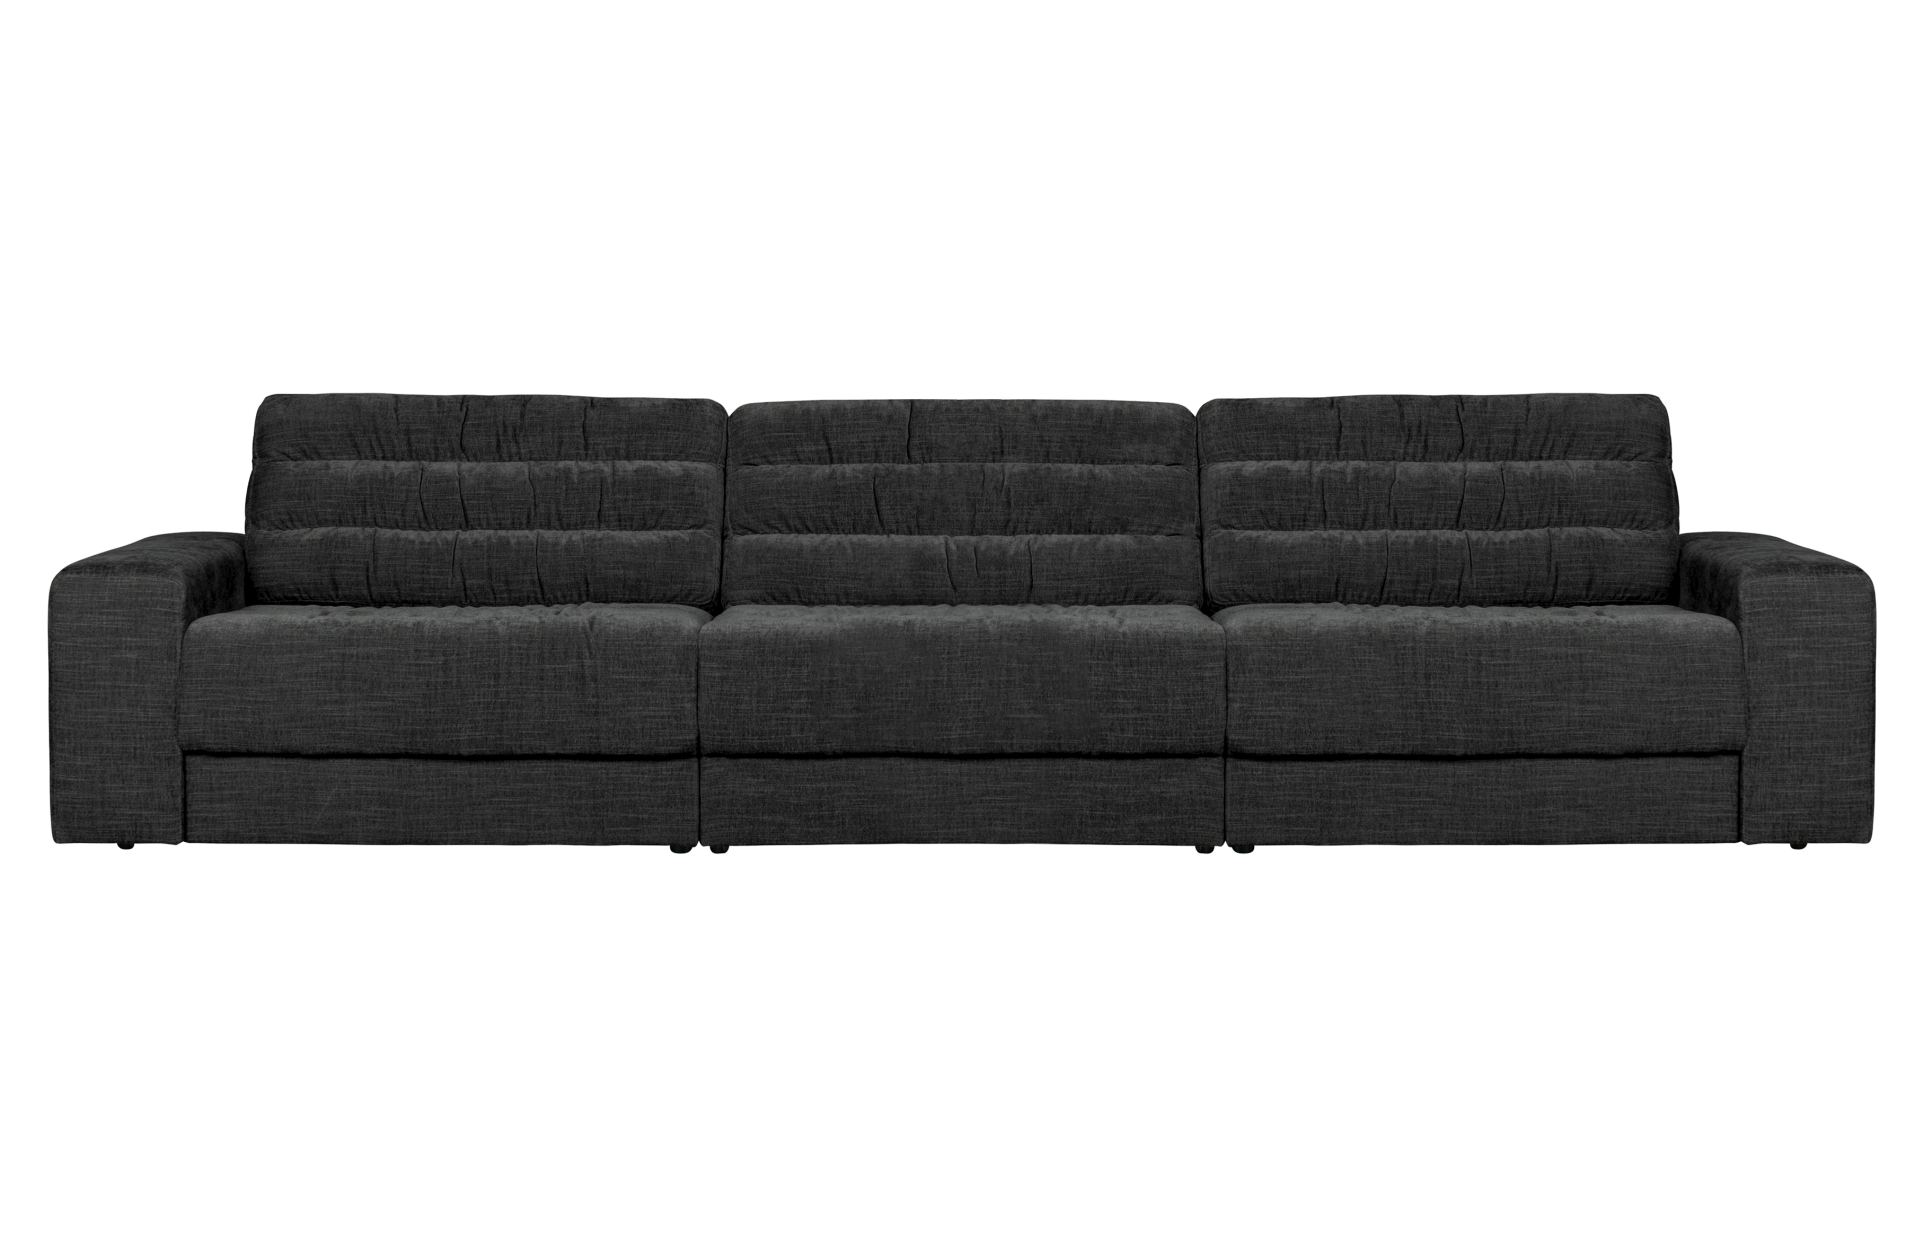 Das Sofa Date überzeugt mit seinem klassischen Design. Gefertigt wurde es aus einem Vintage Stoff, welcher einen Anthrazit Farbton besitzen. Das Gestell ist aus Kunststoff und hat eine schwarze Farbe. Das Sofa hat eine Breite von 316 cm.